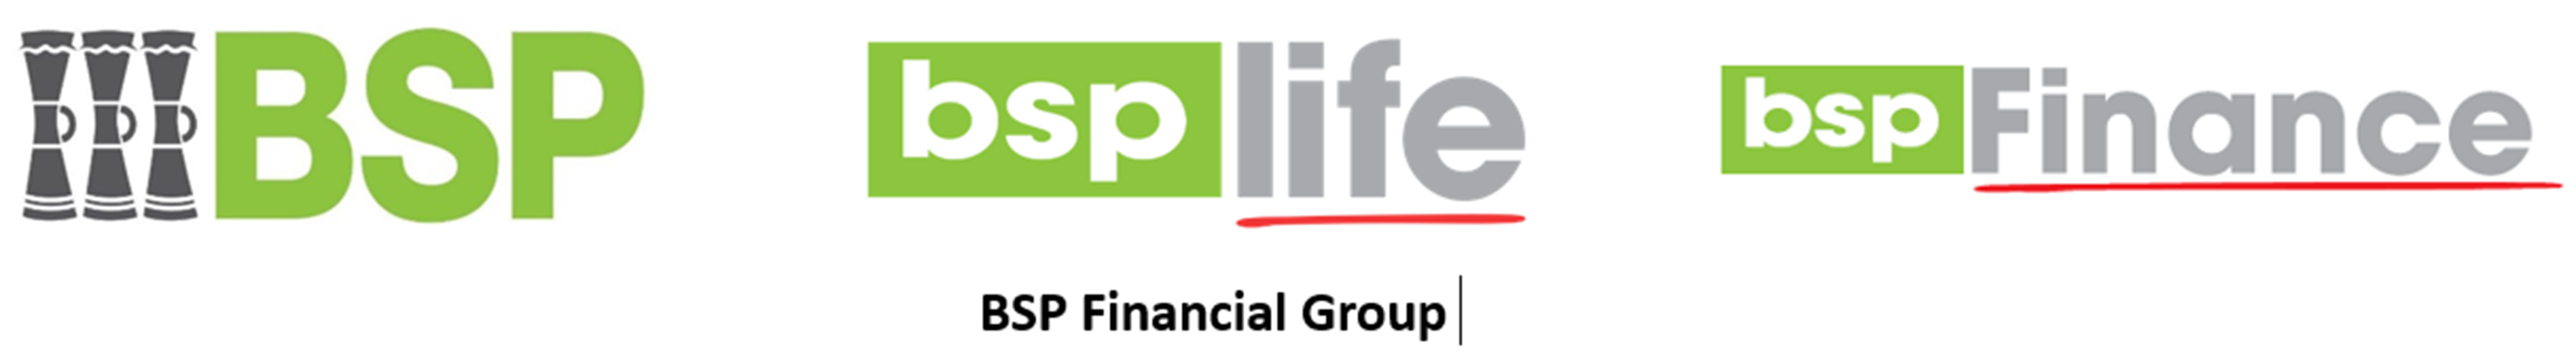 BSP Financial group logo -1Final